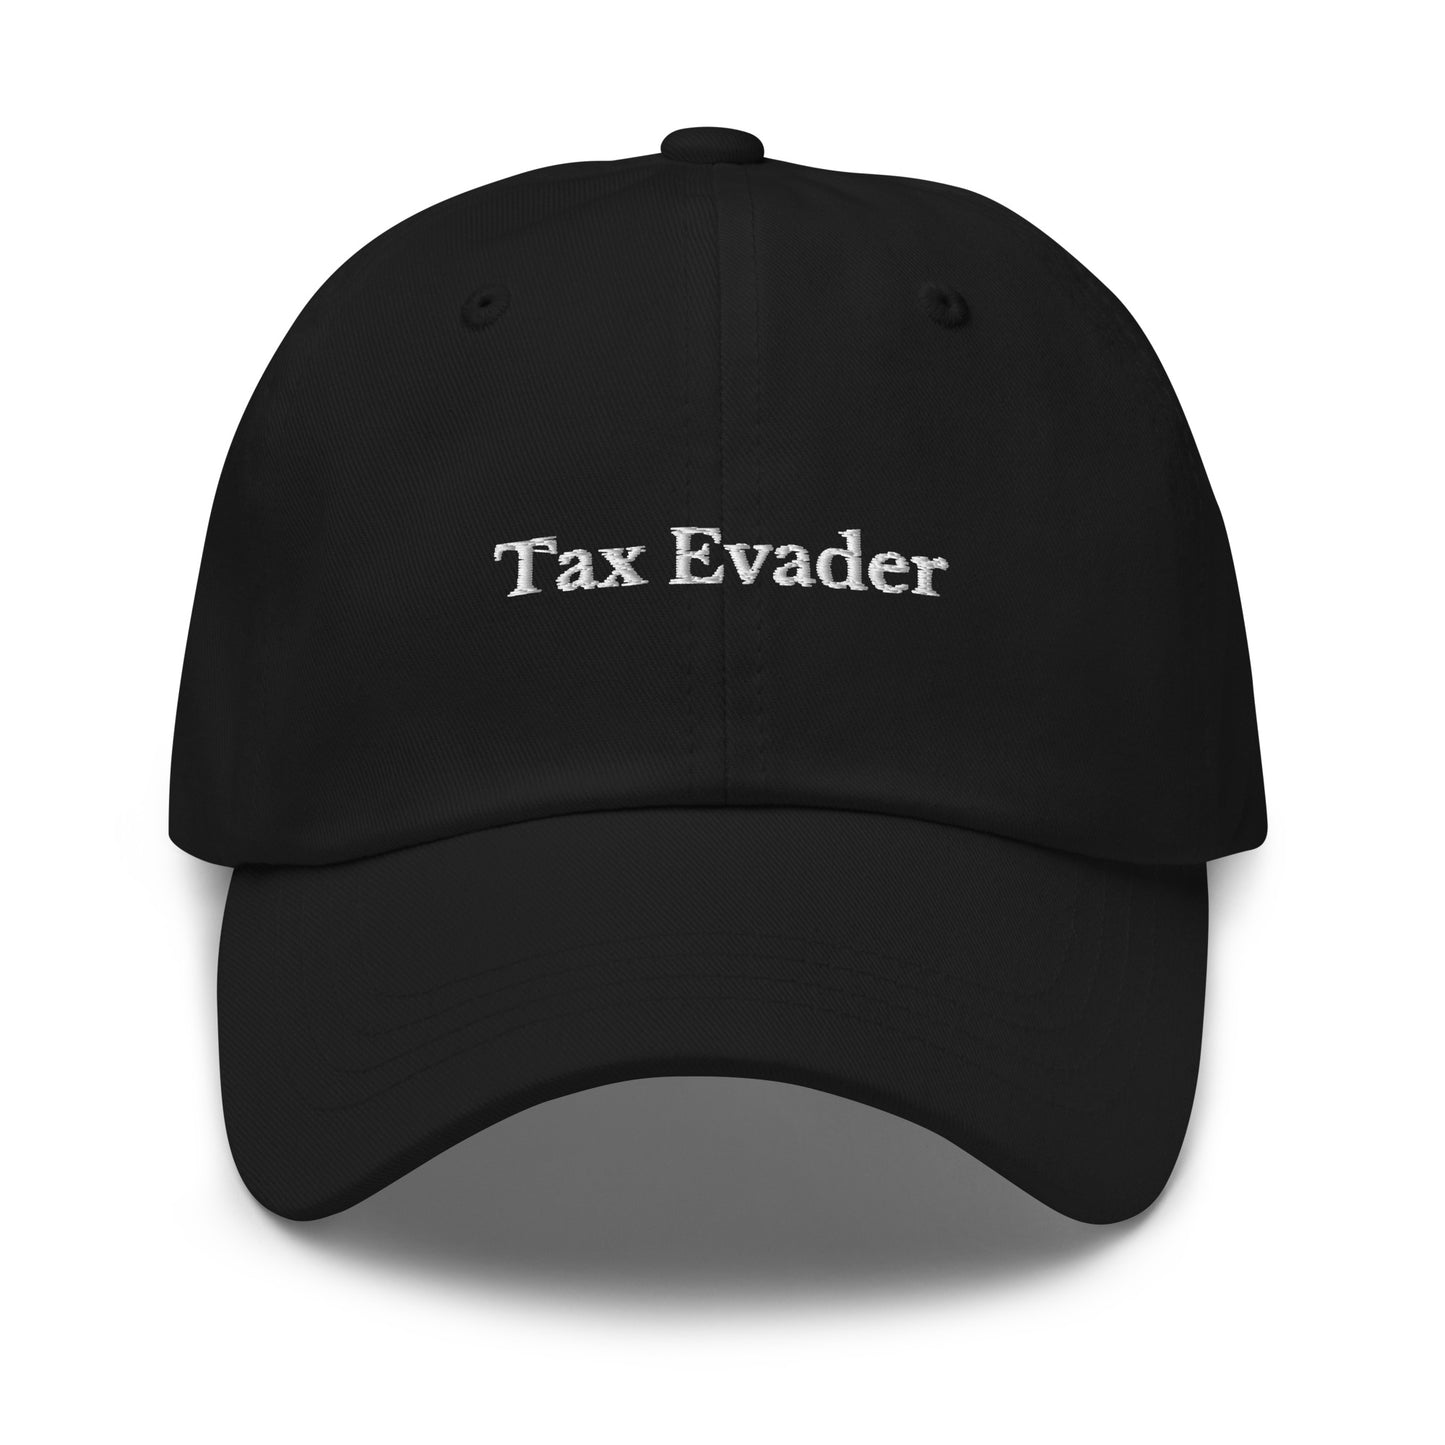 Tax Evader Cap